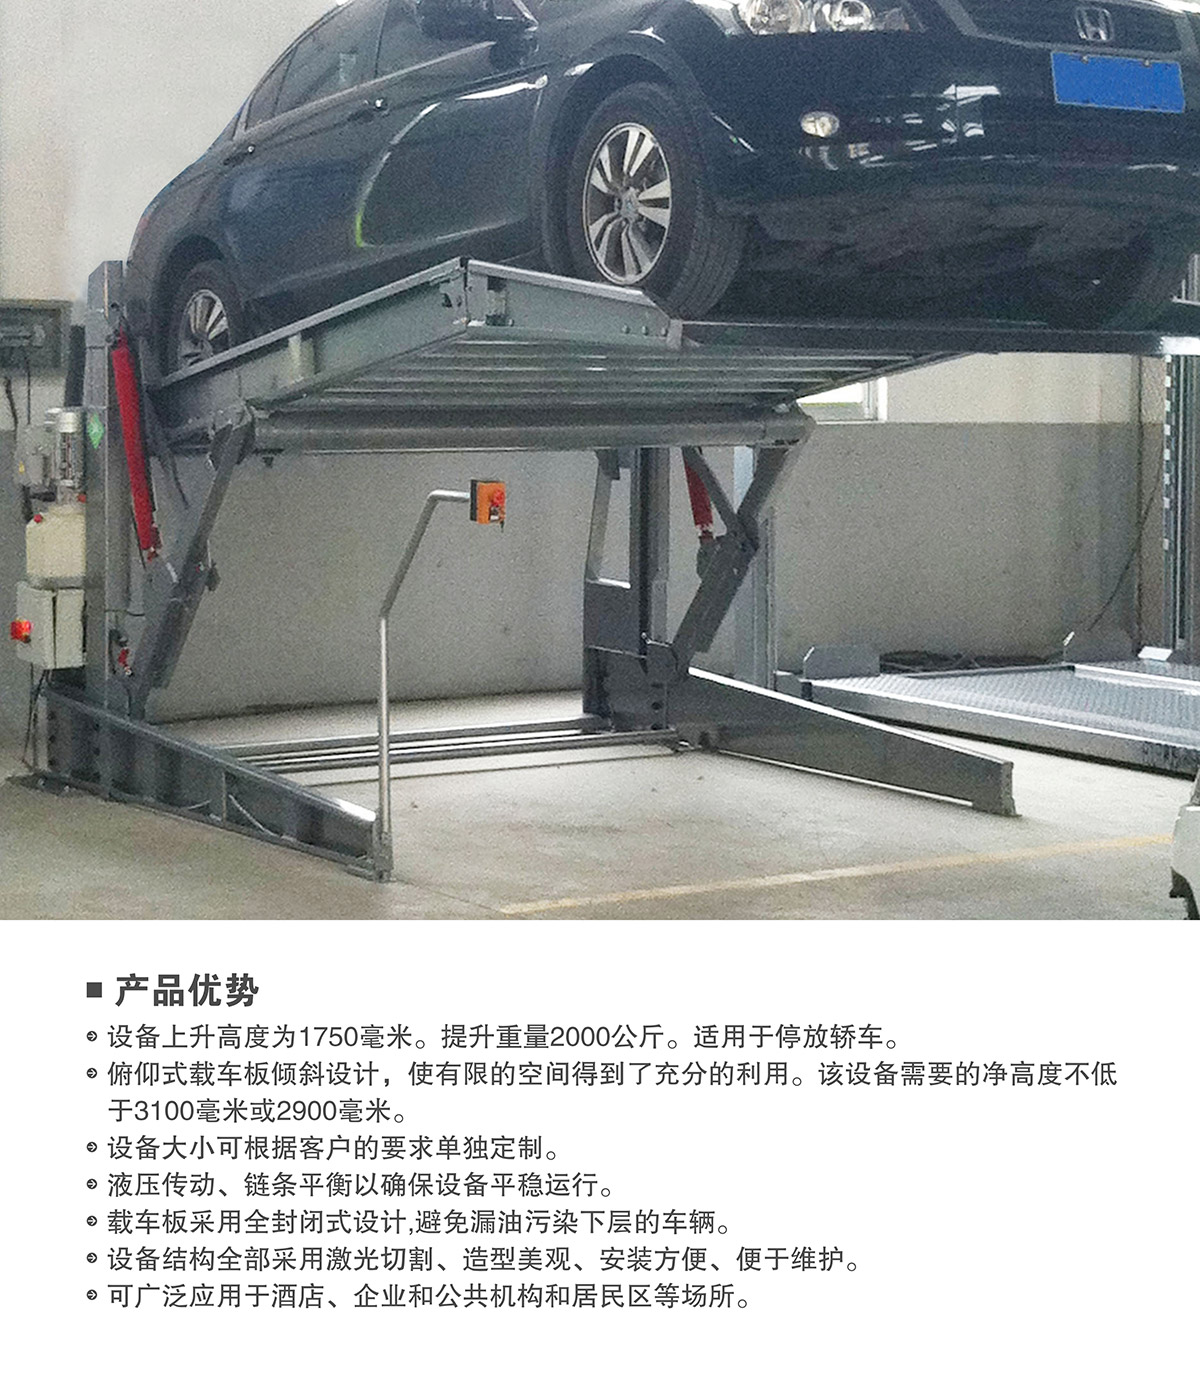 俯仰式简易升降机械停车设备产品优势.jpg